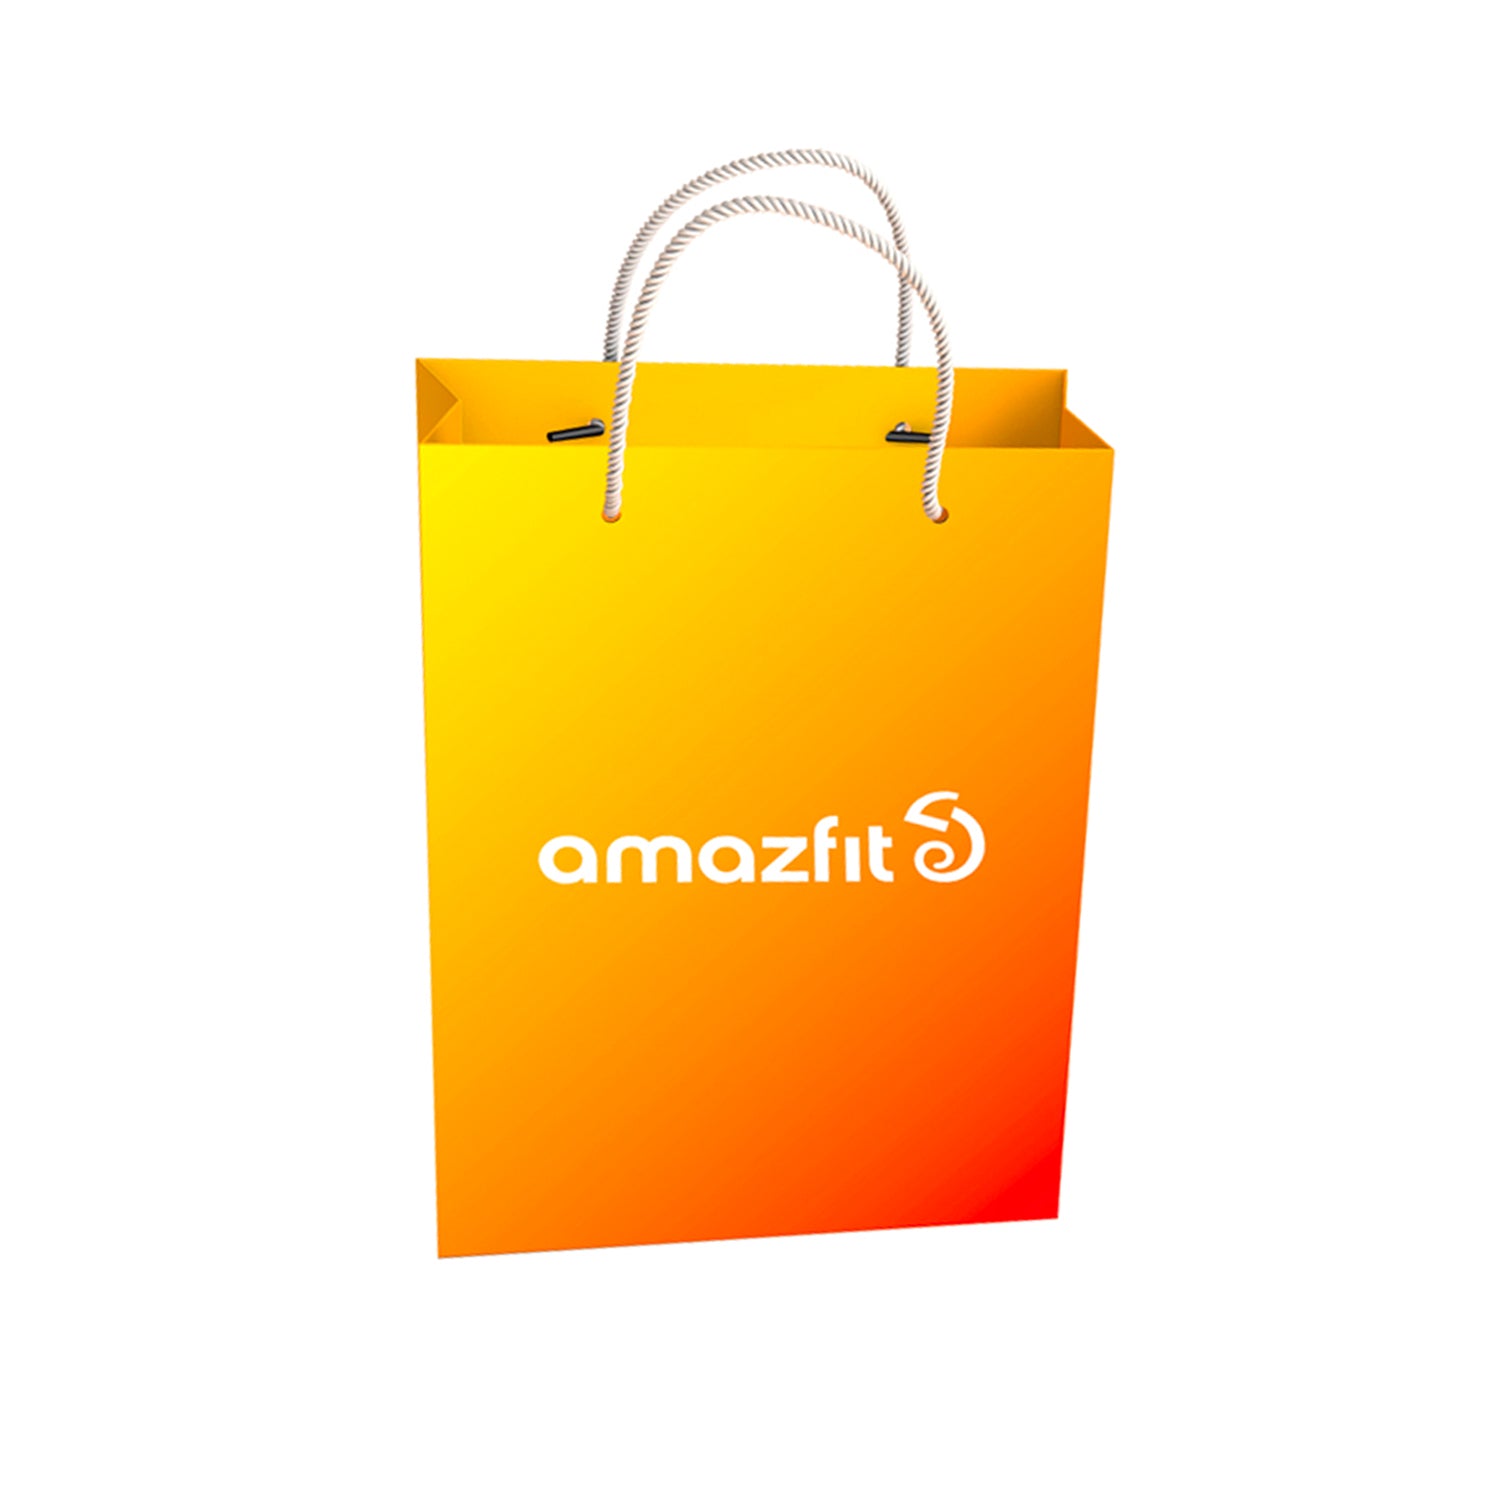 Amazfit shopping bag